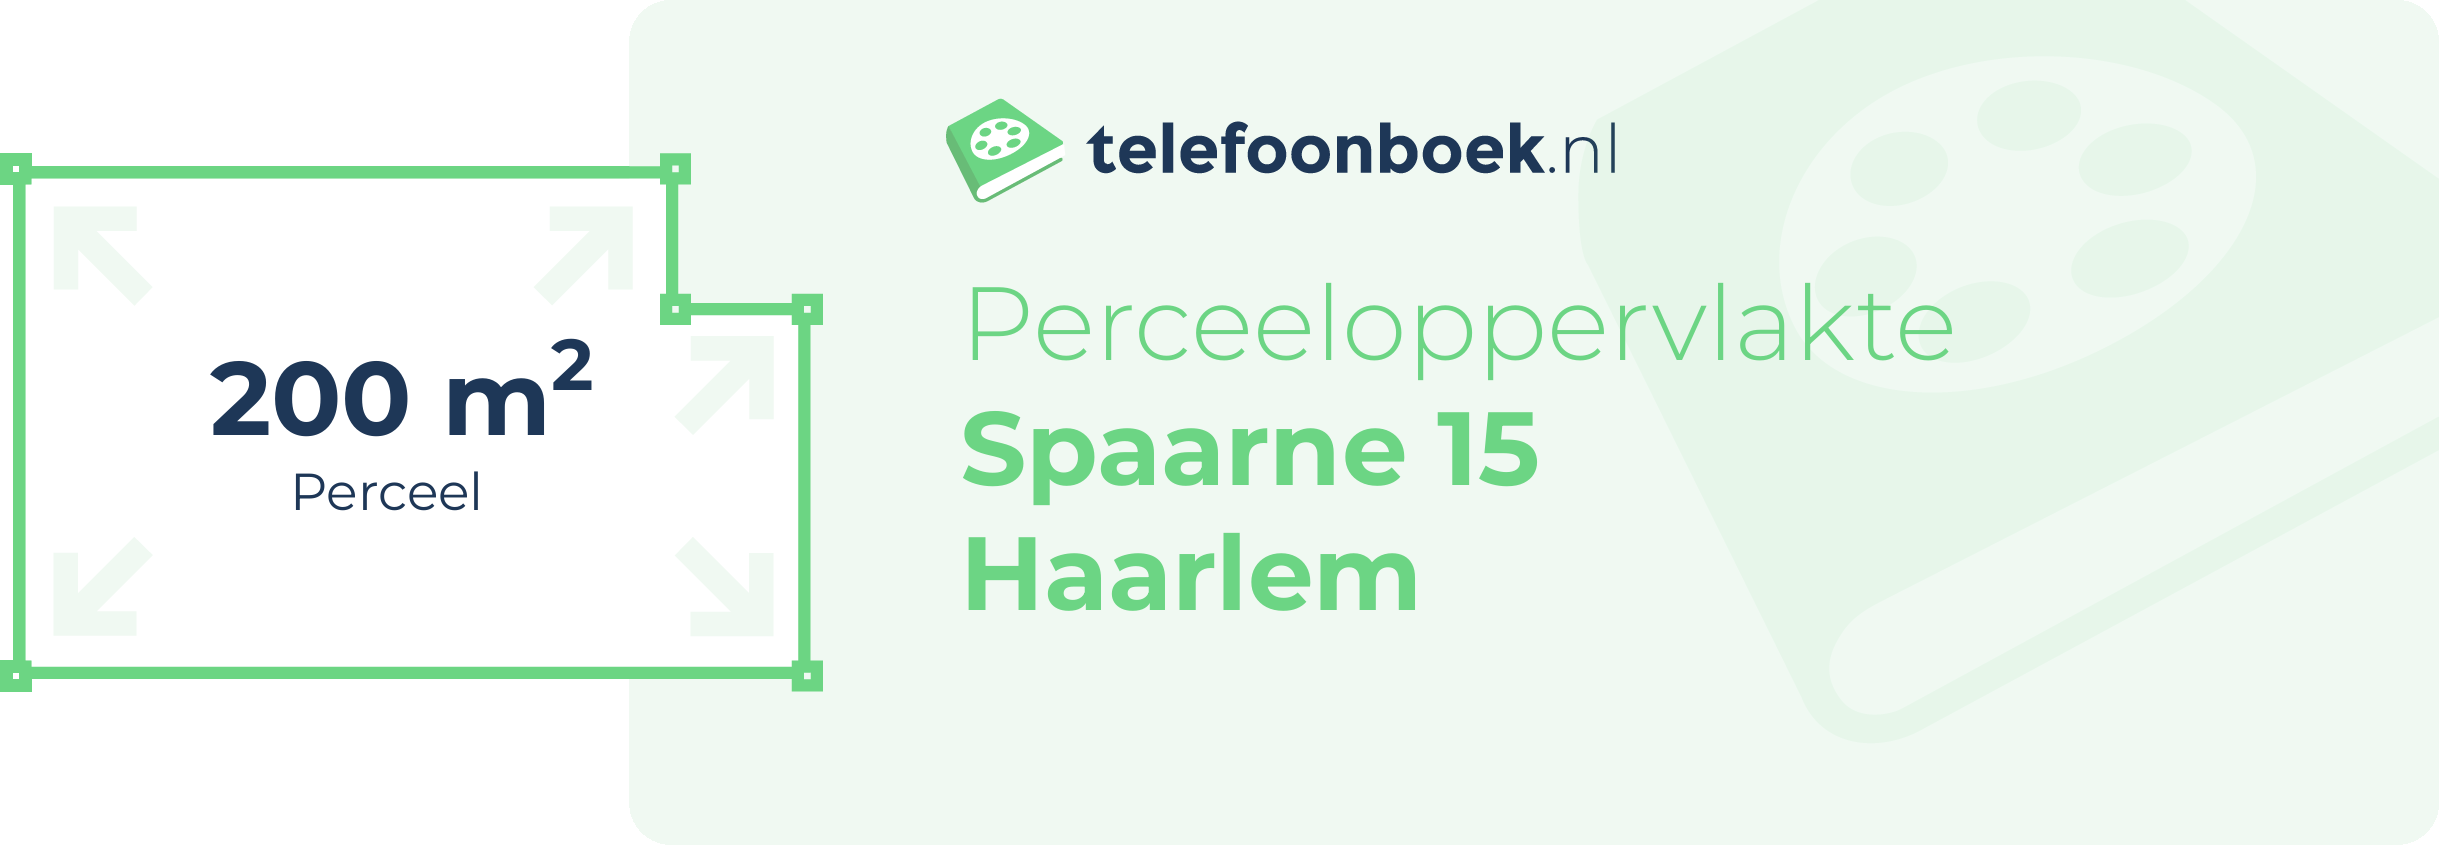 Perceeloppervlakte Spaarne 15 Haarlem